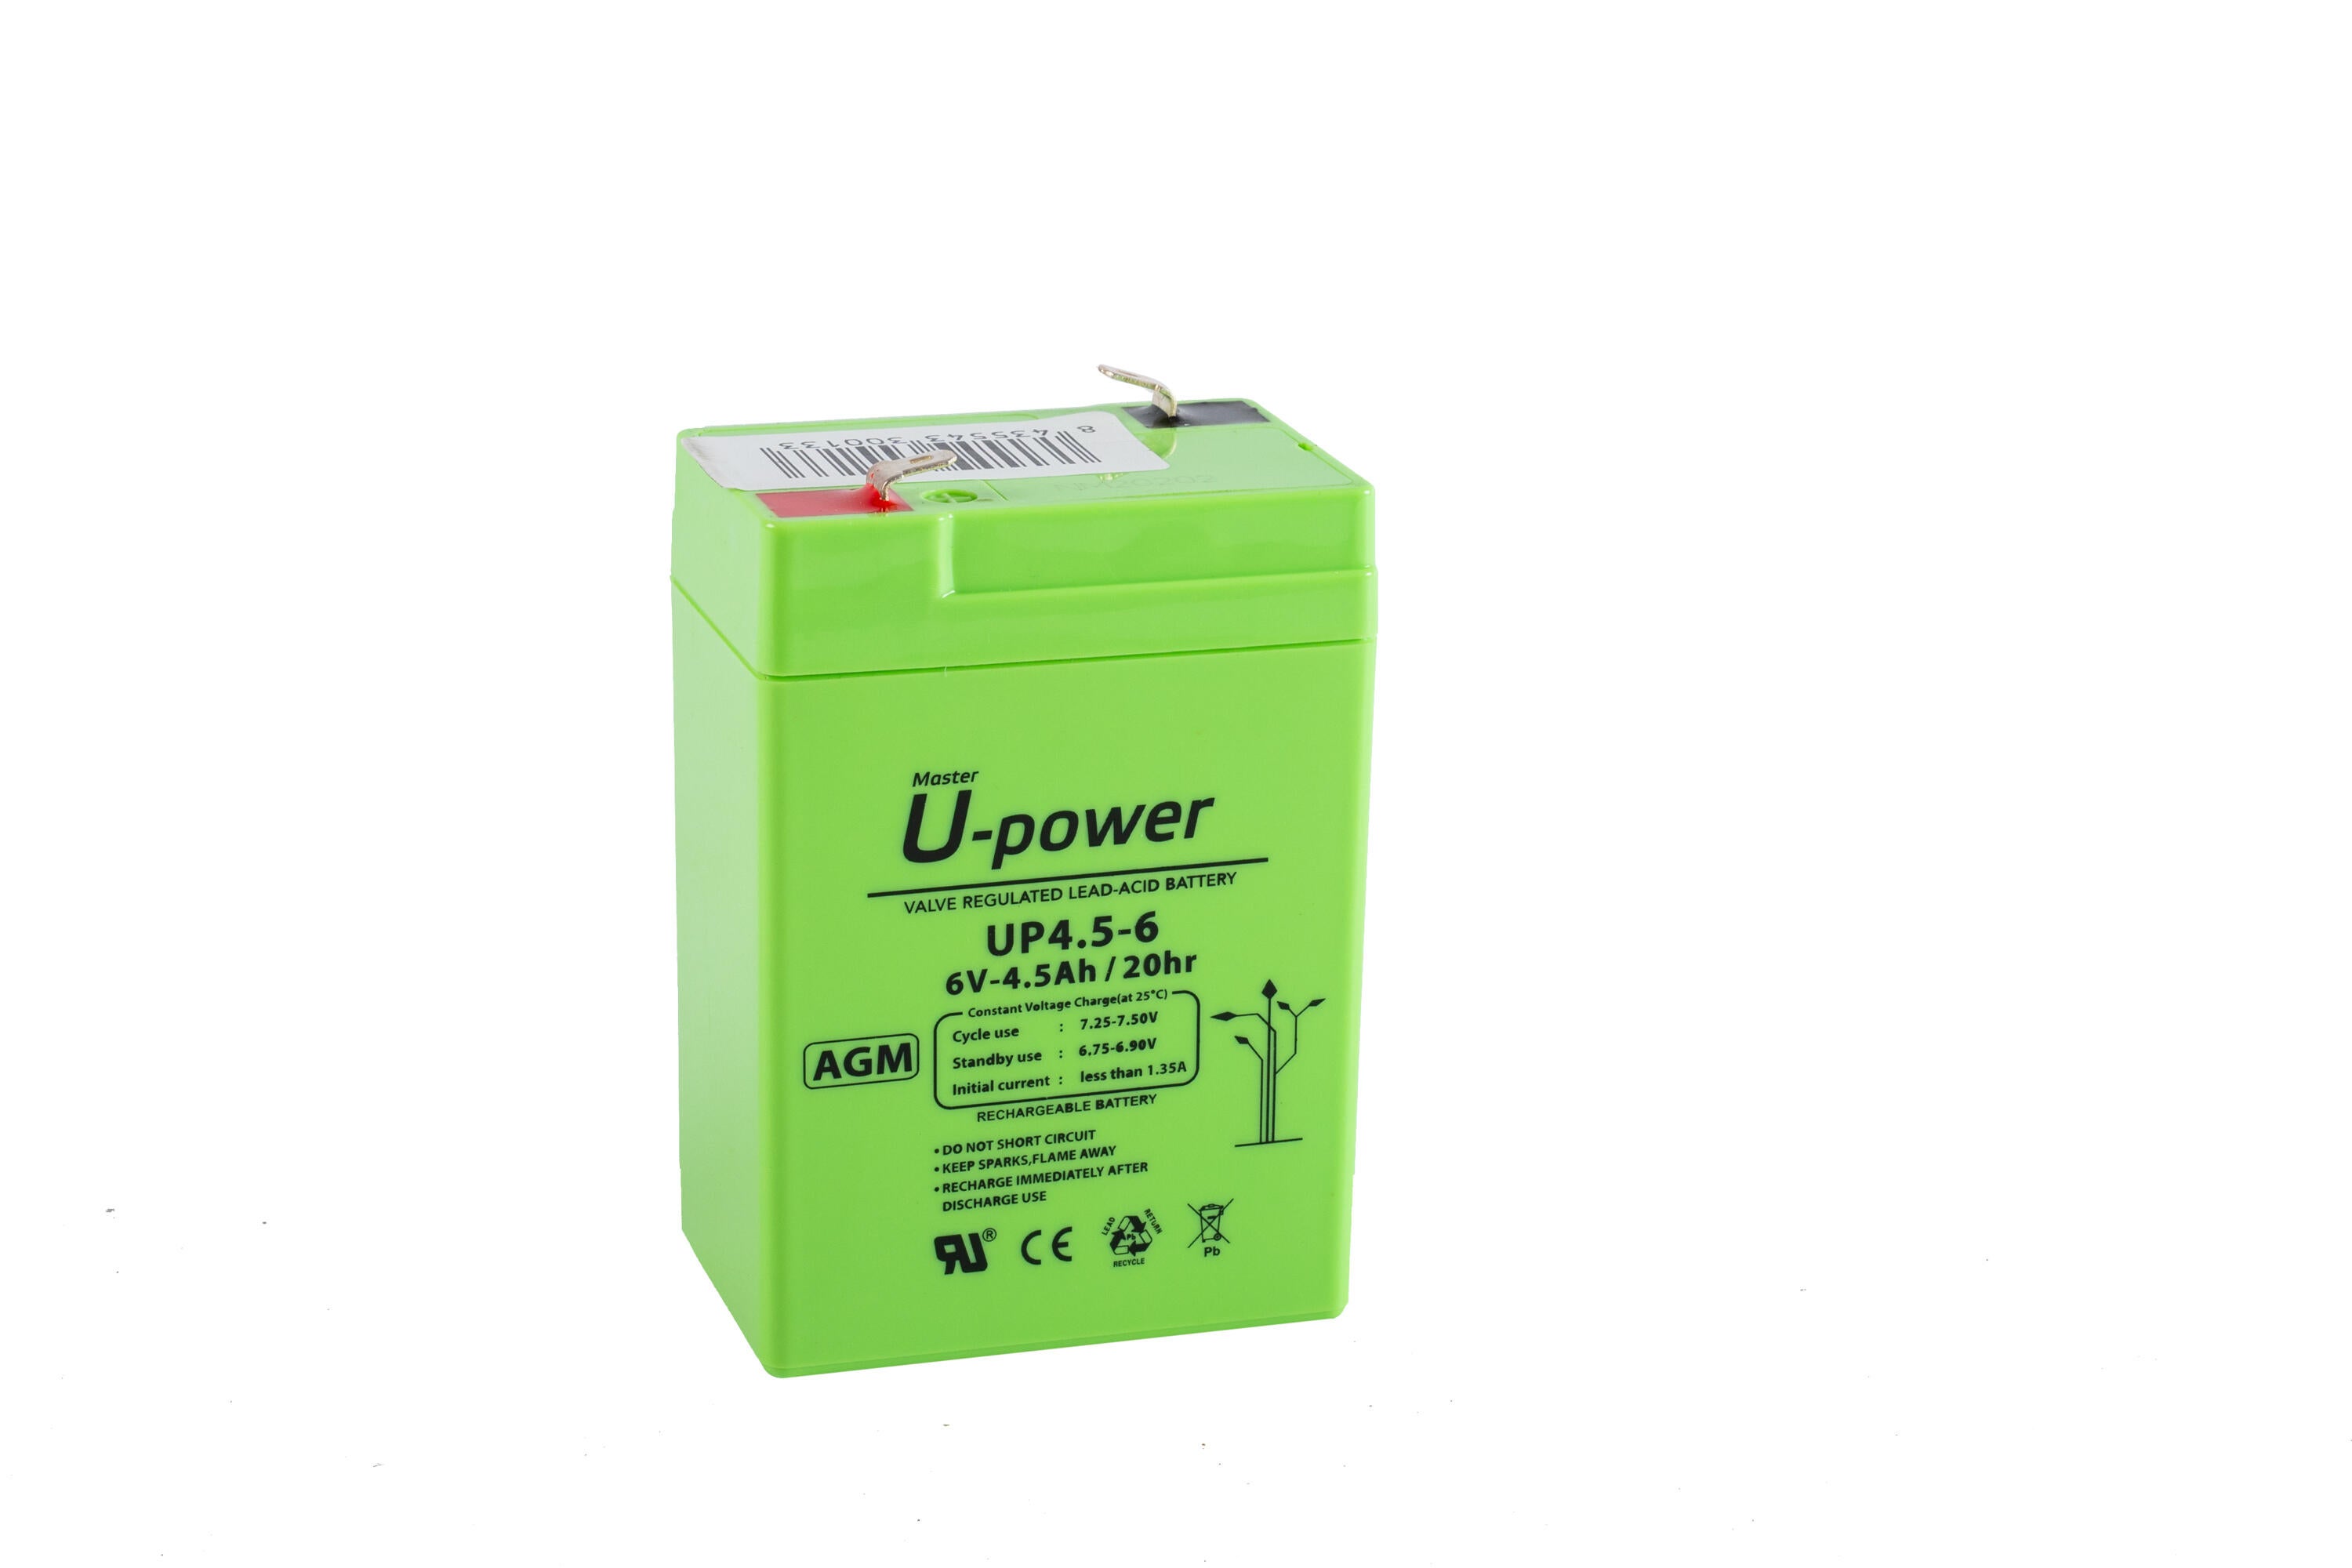 Batería solar agm u-power 6v 4.5ah